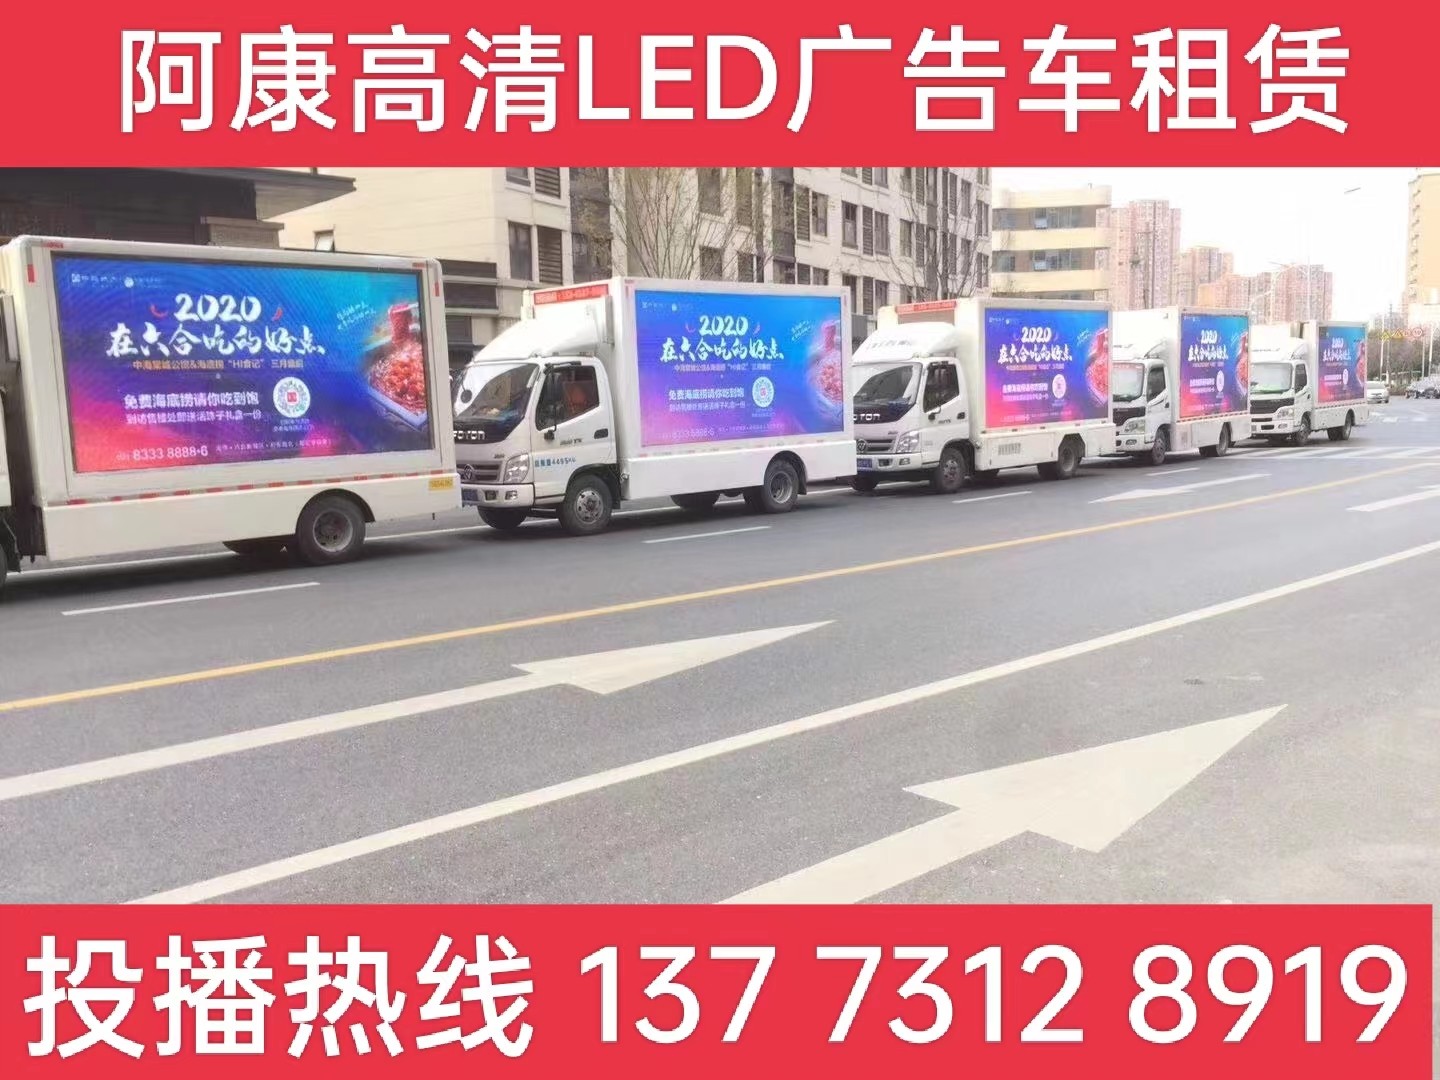 海陵区宣传车出租-海底捞LED广告